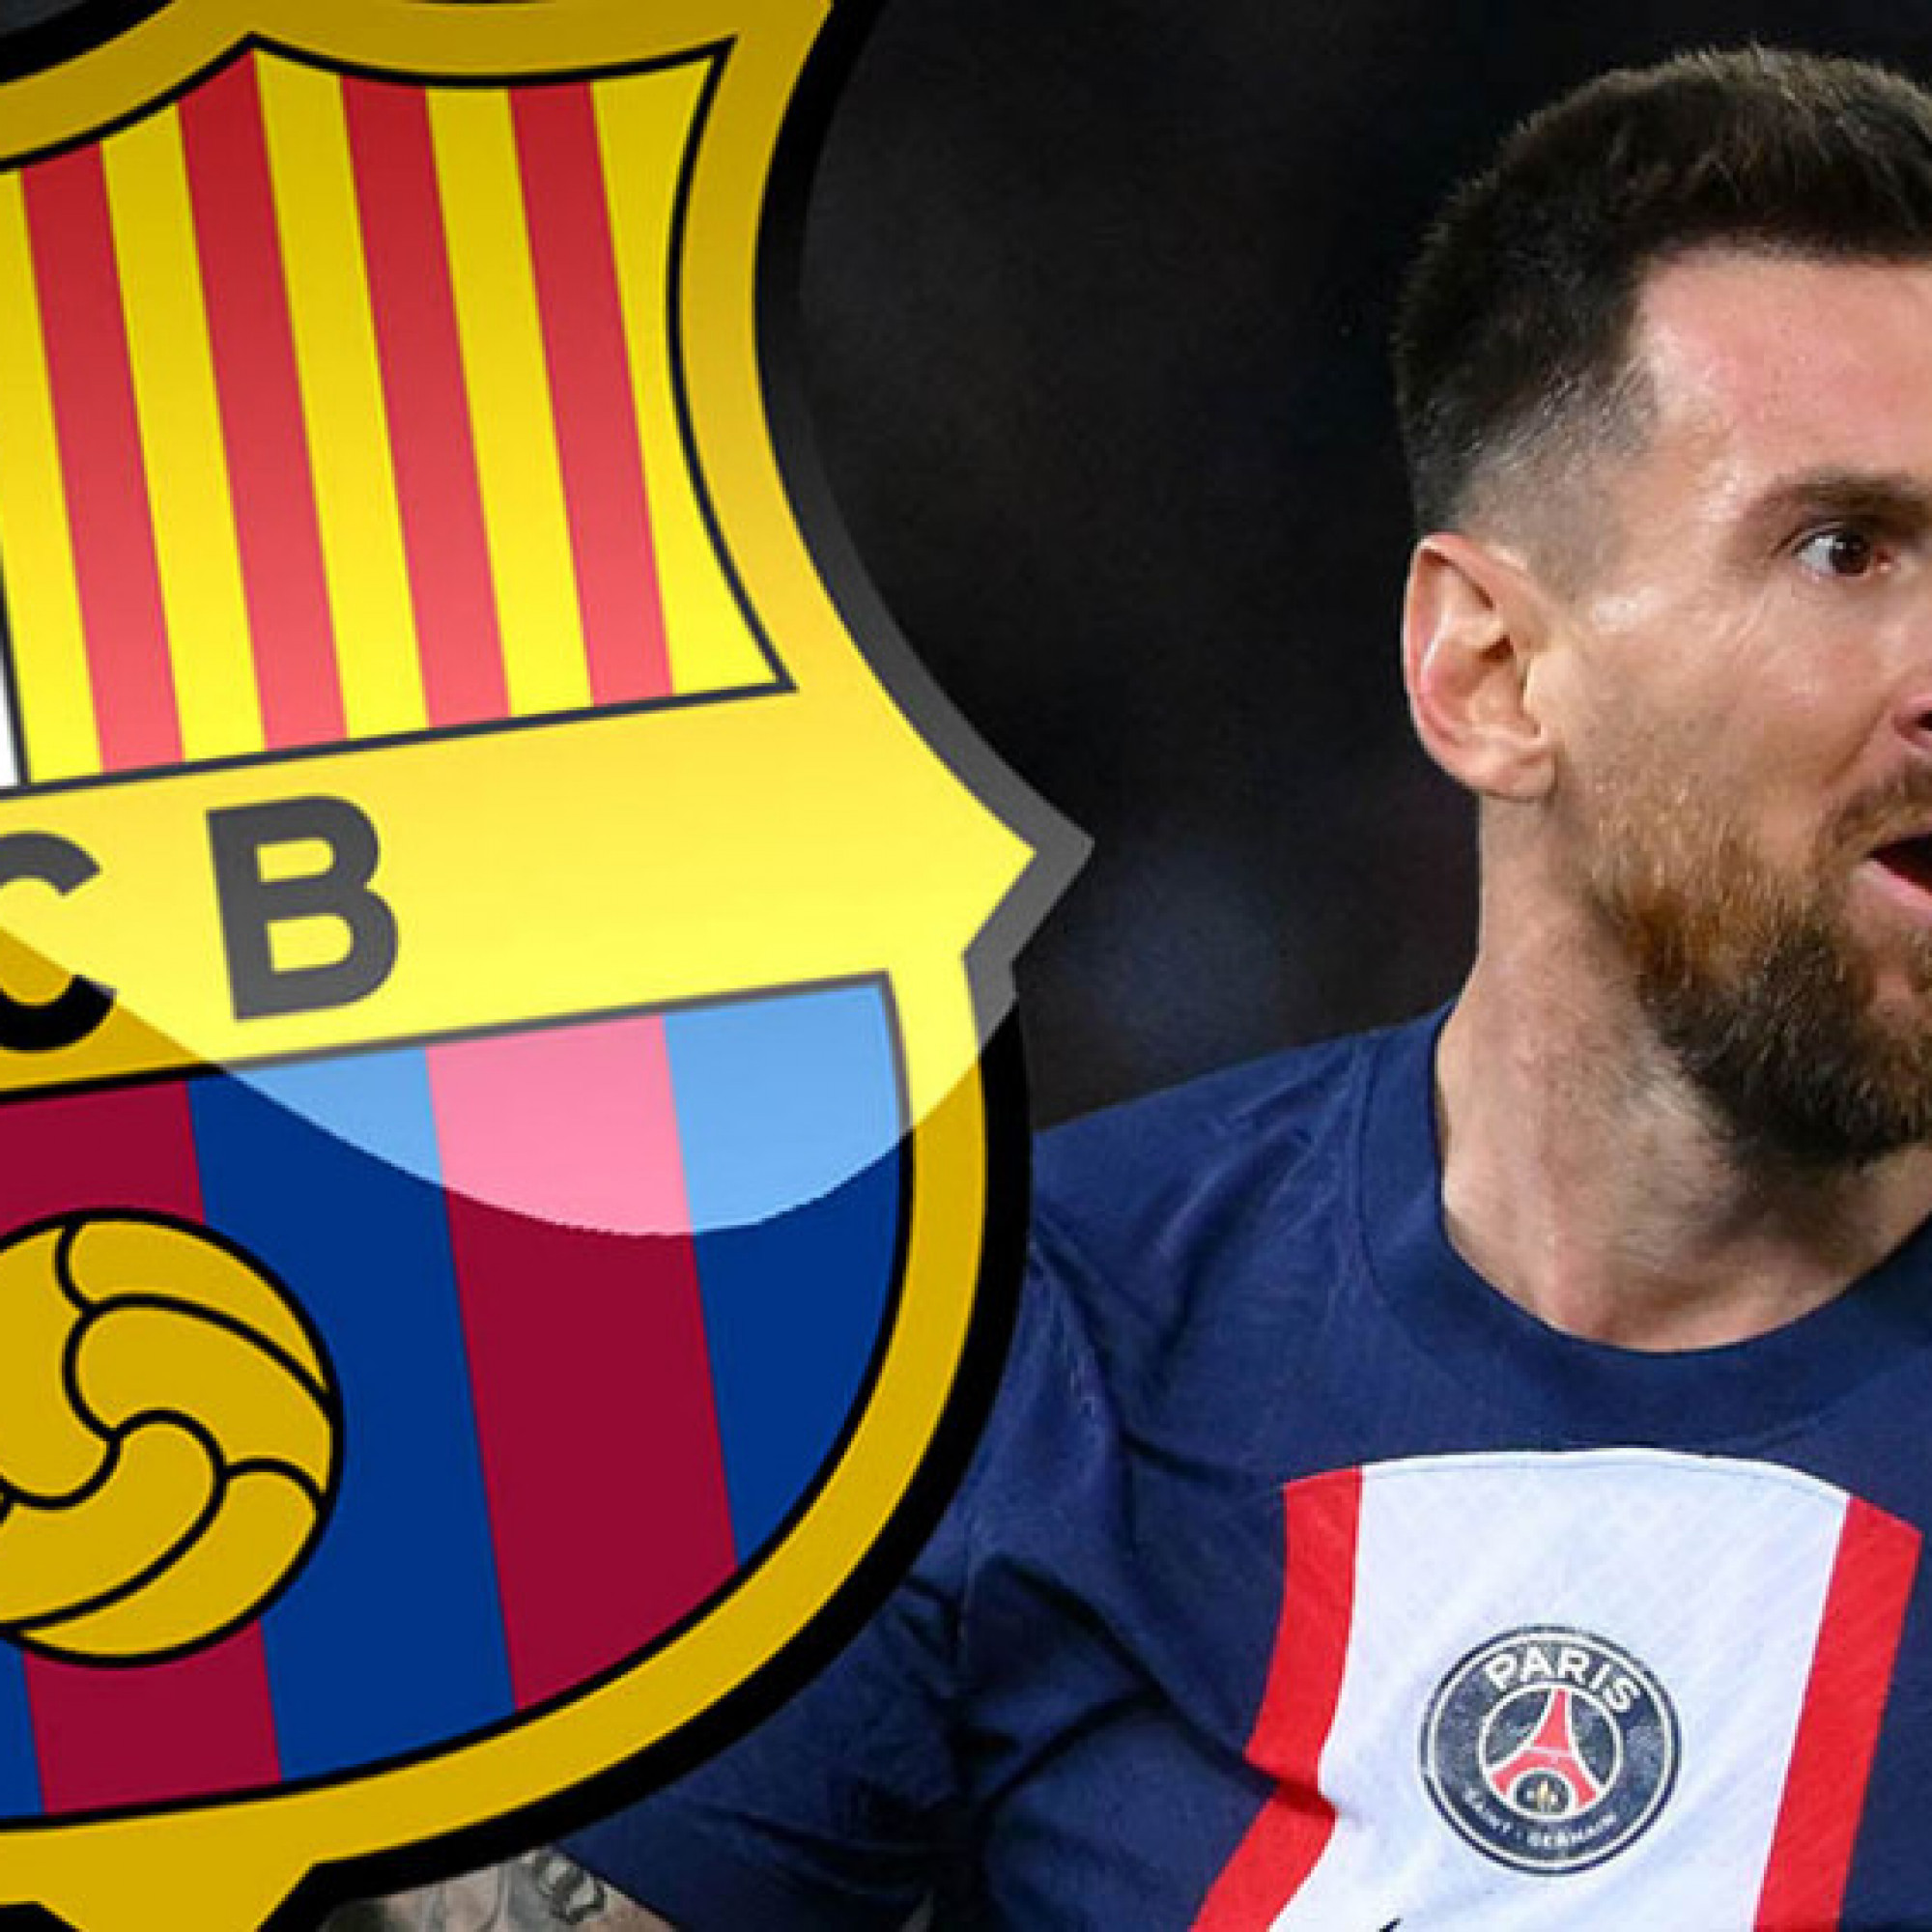  - Barcelona bị chỉ trích vì đề nghị lố bịch với Messi, trả lương quá "bèo"